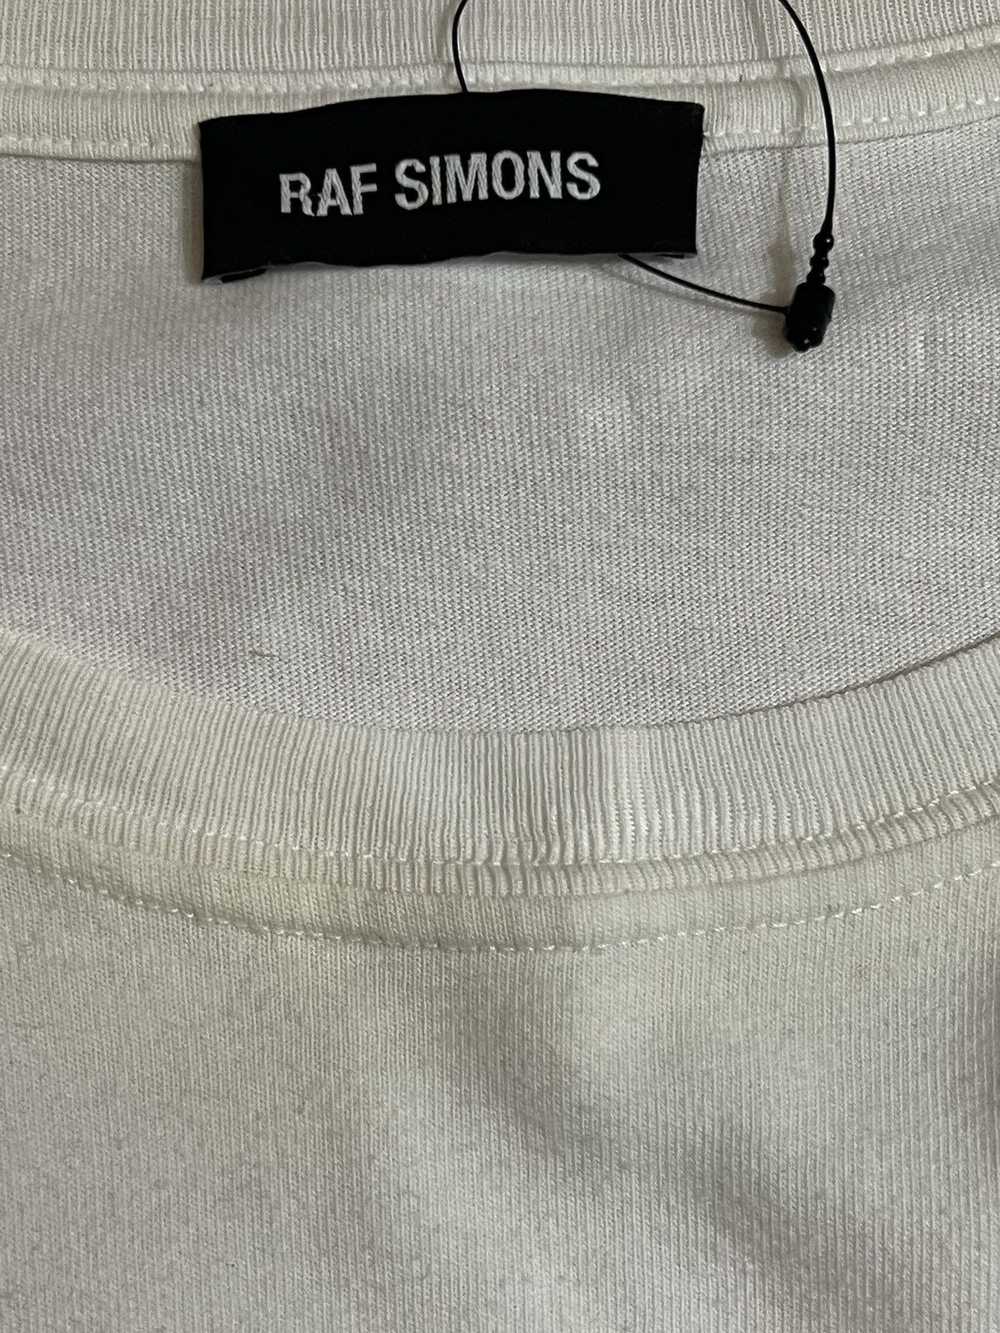 Raf Simons × Raf by Raf Simons Raf Simons SS19 Ba… - image 3